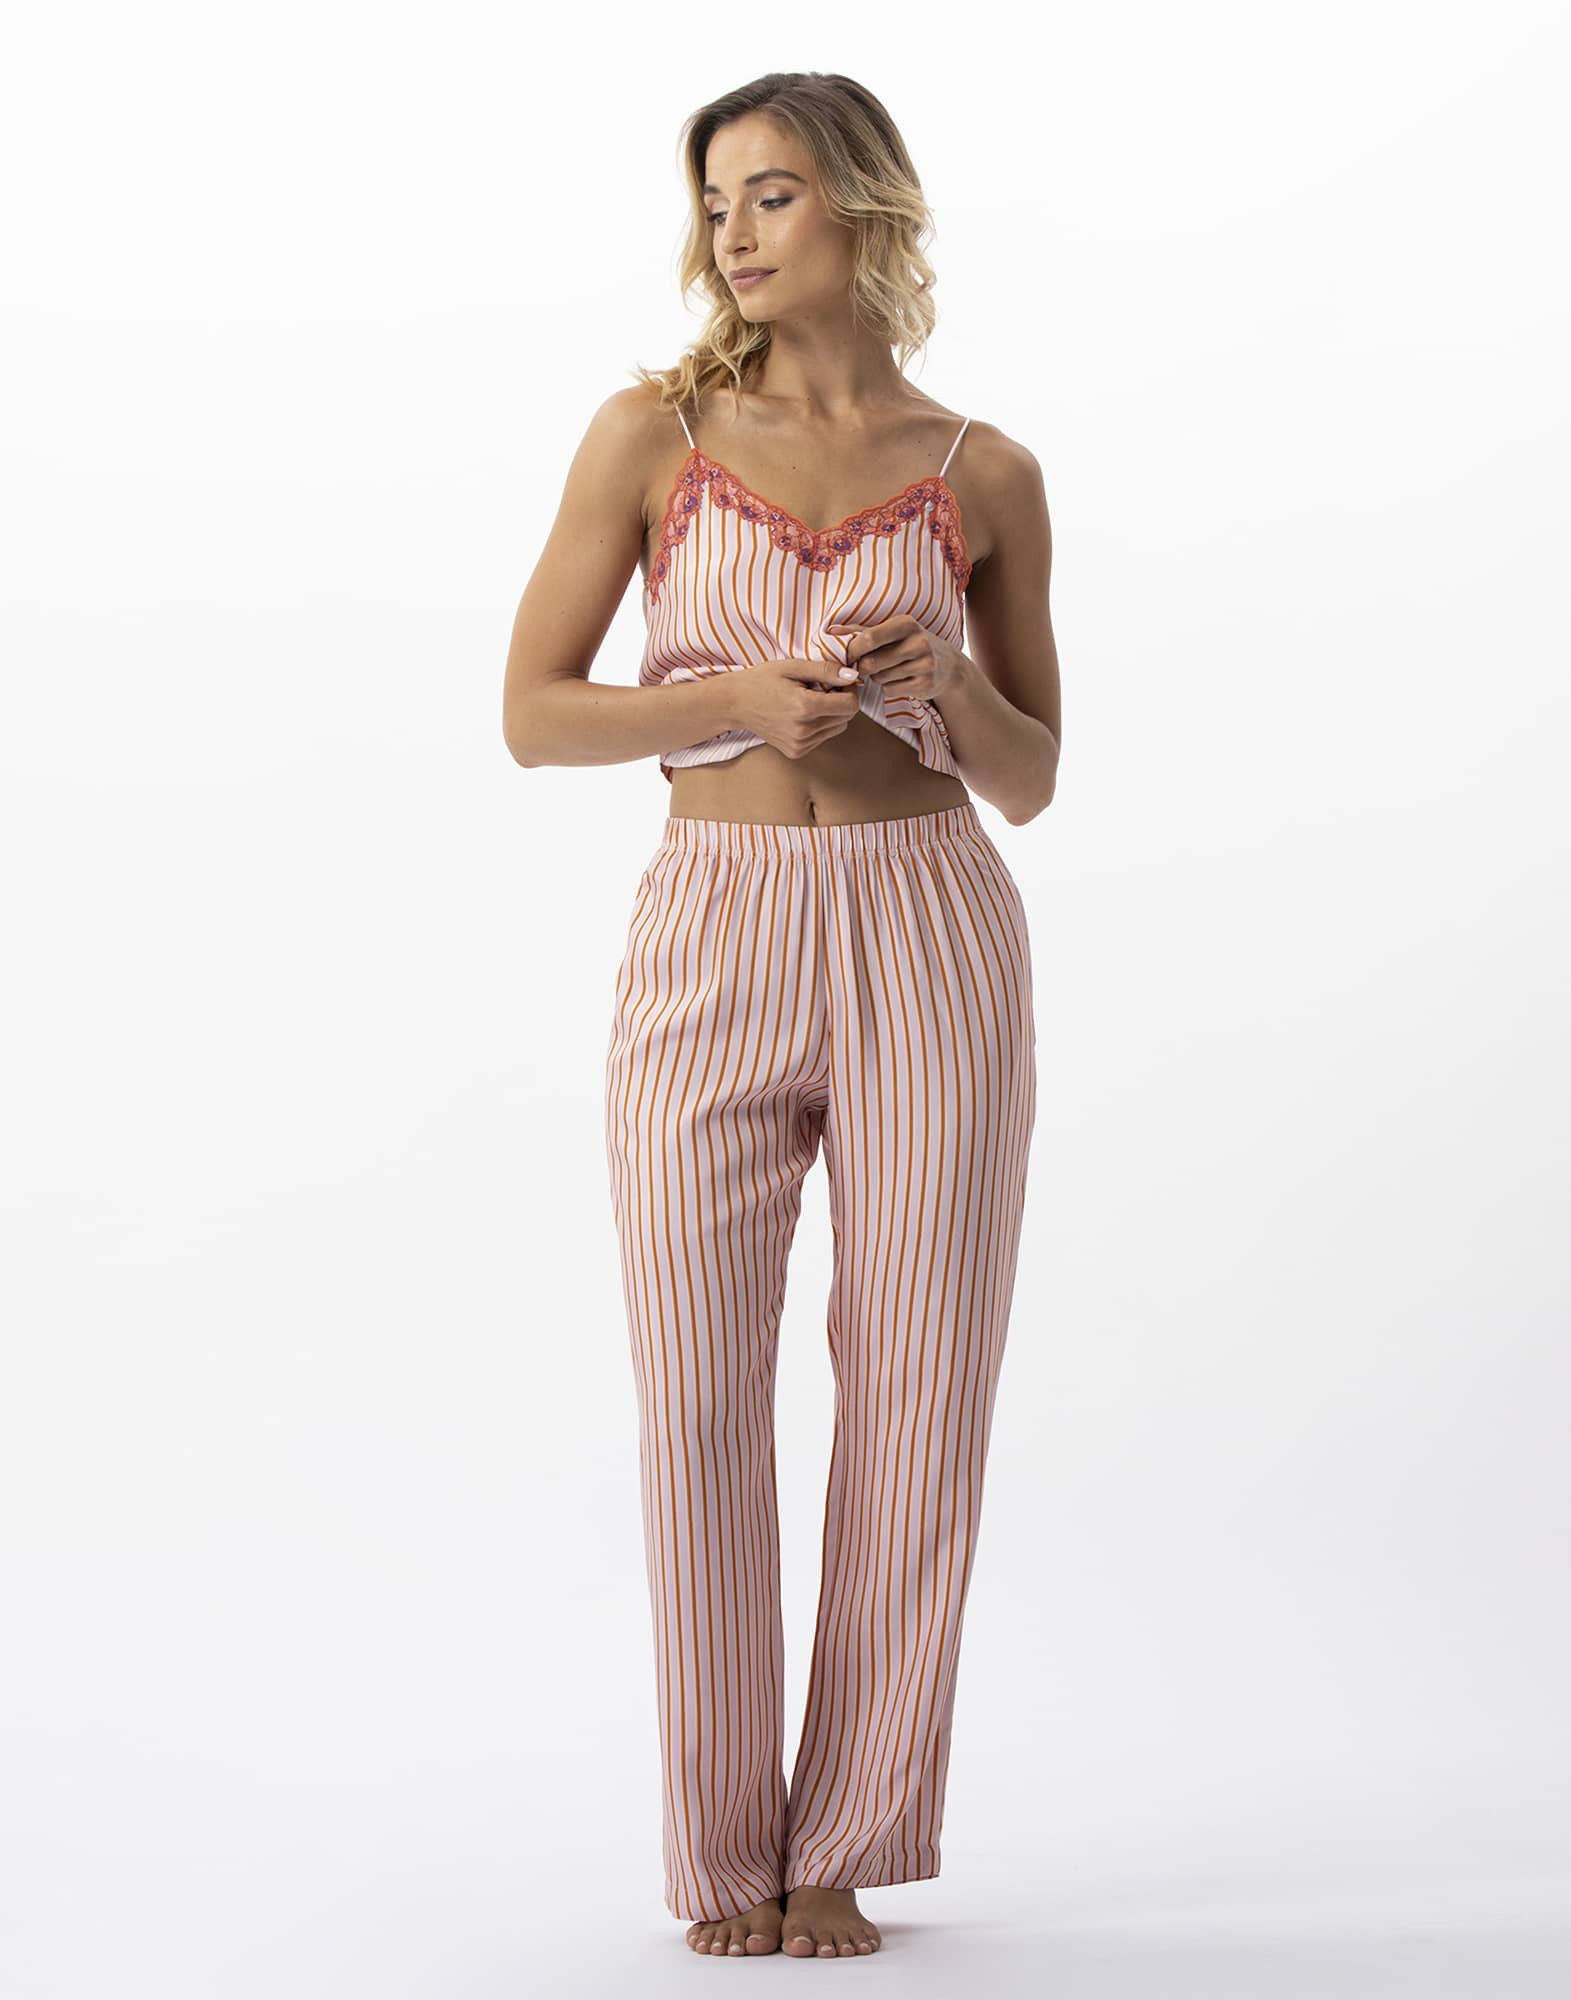 Striped pyjamas trousers in 100% viscose BIRKIN 780 dragee